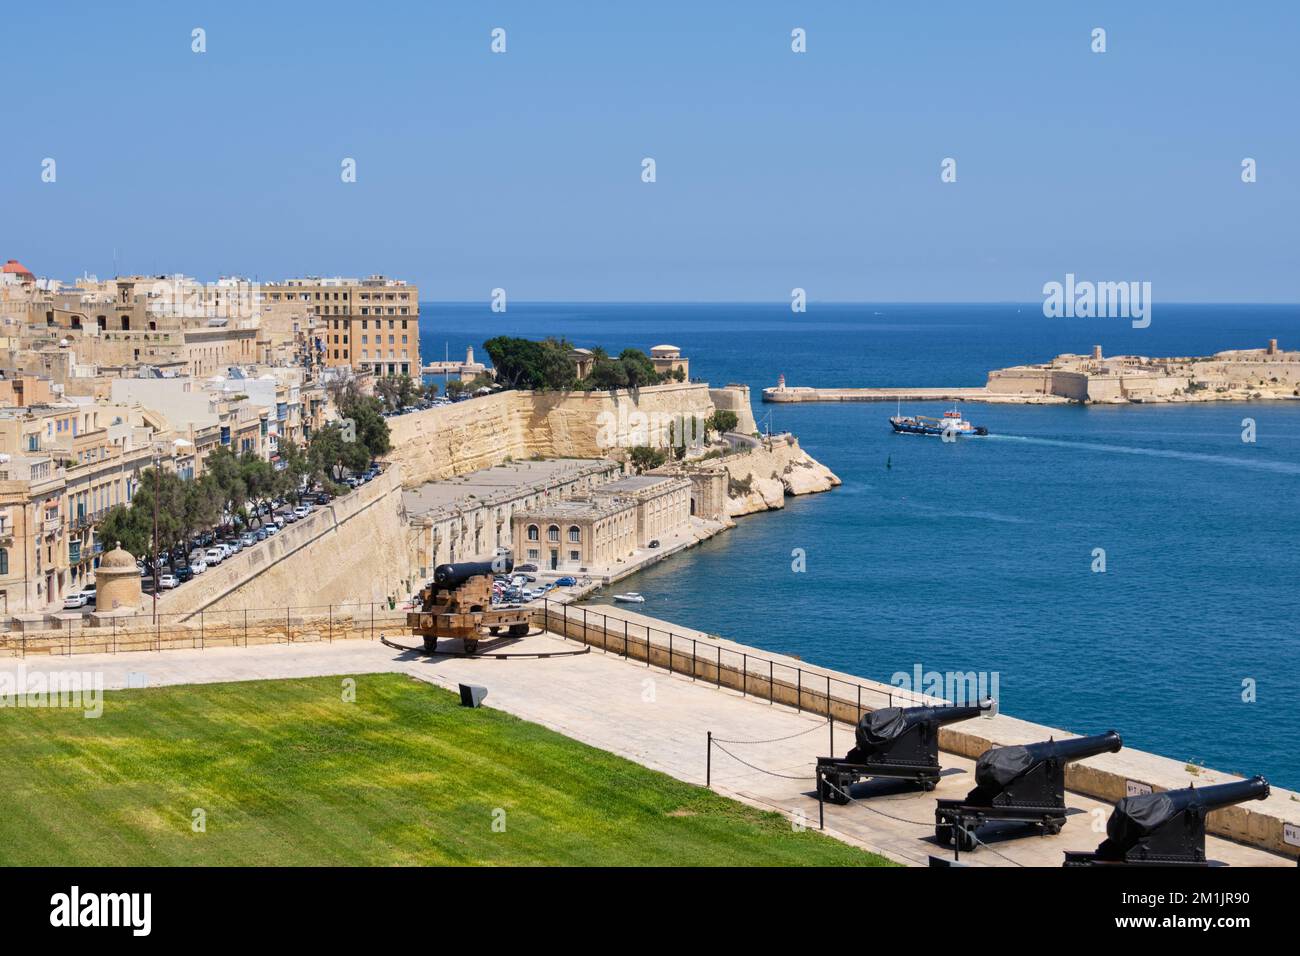 Vue panoramique sur le Grand Port et les murs fortifiés depuis les jardins de la haute-Barrakka - la Valette, Malte Banque D'Images